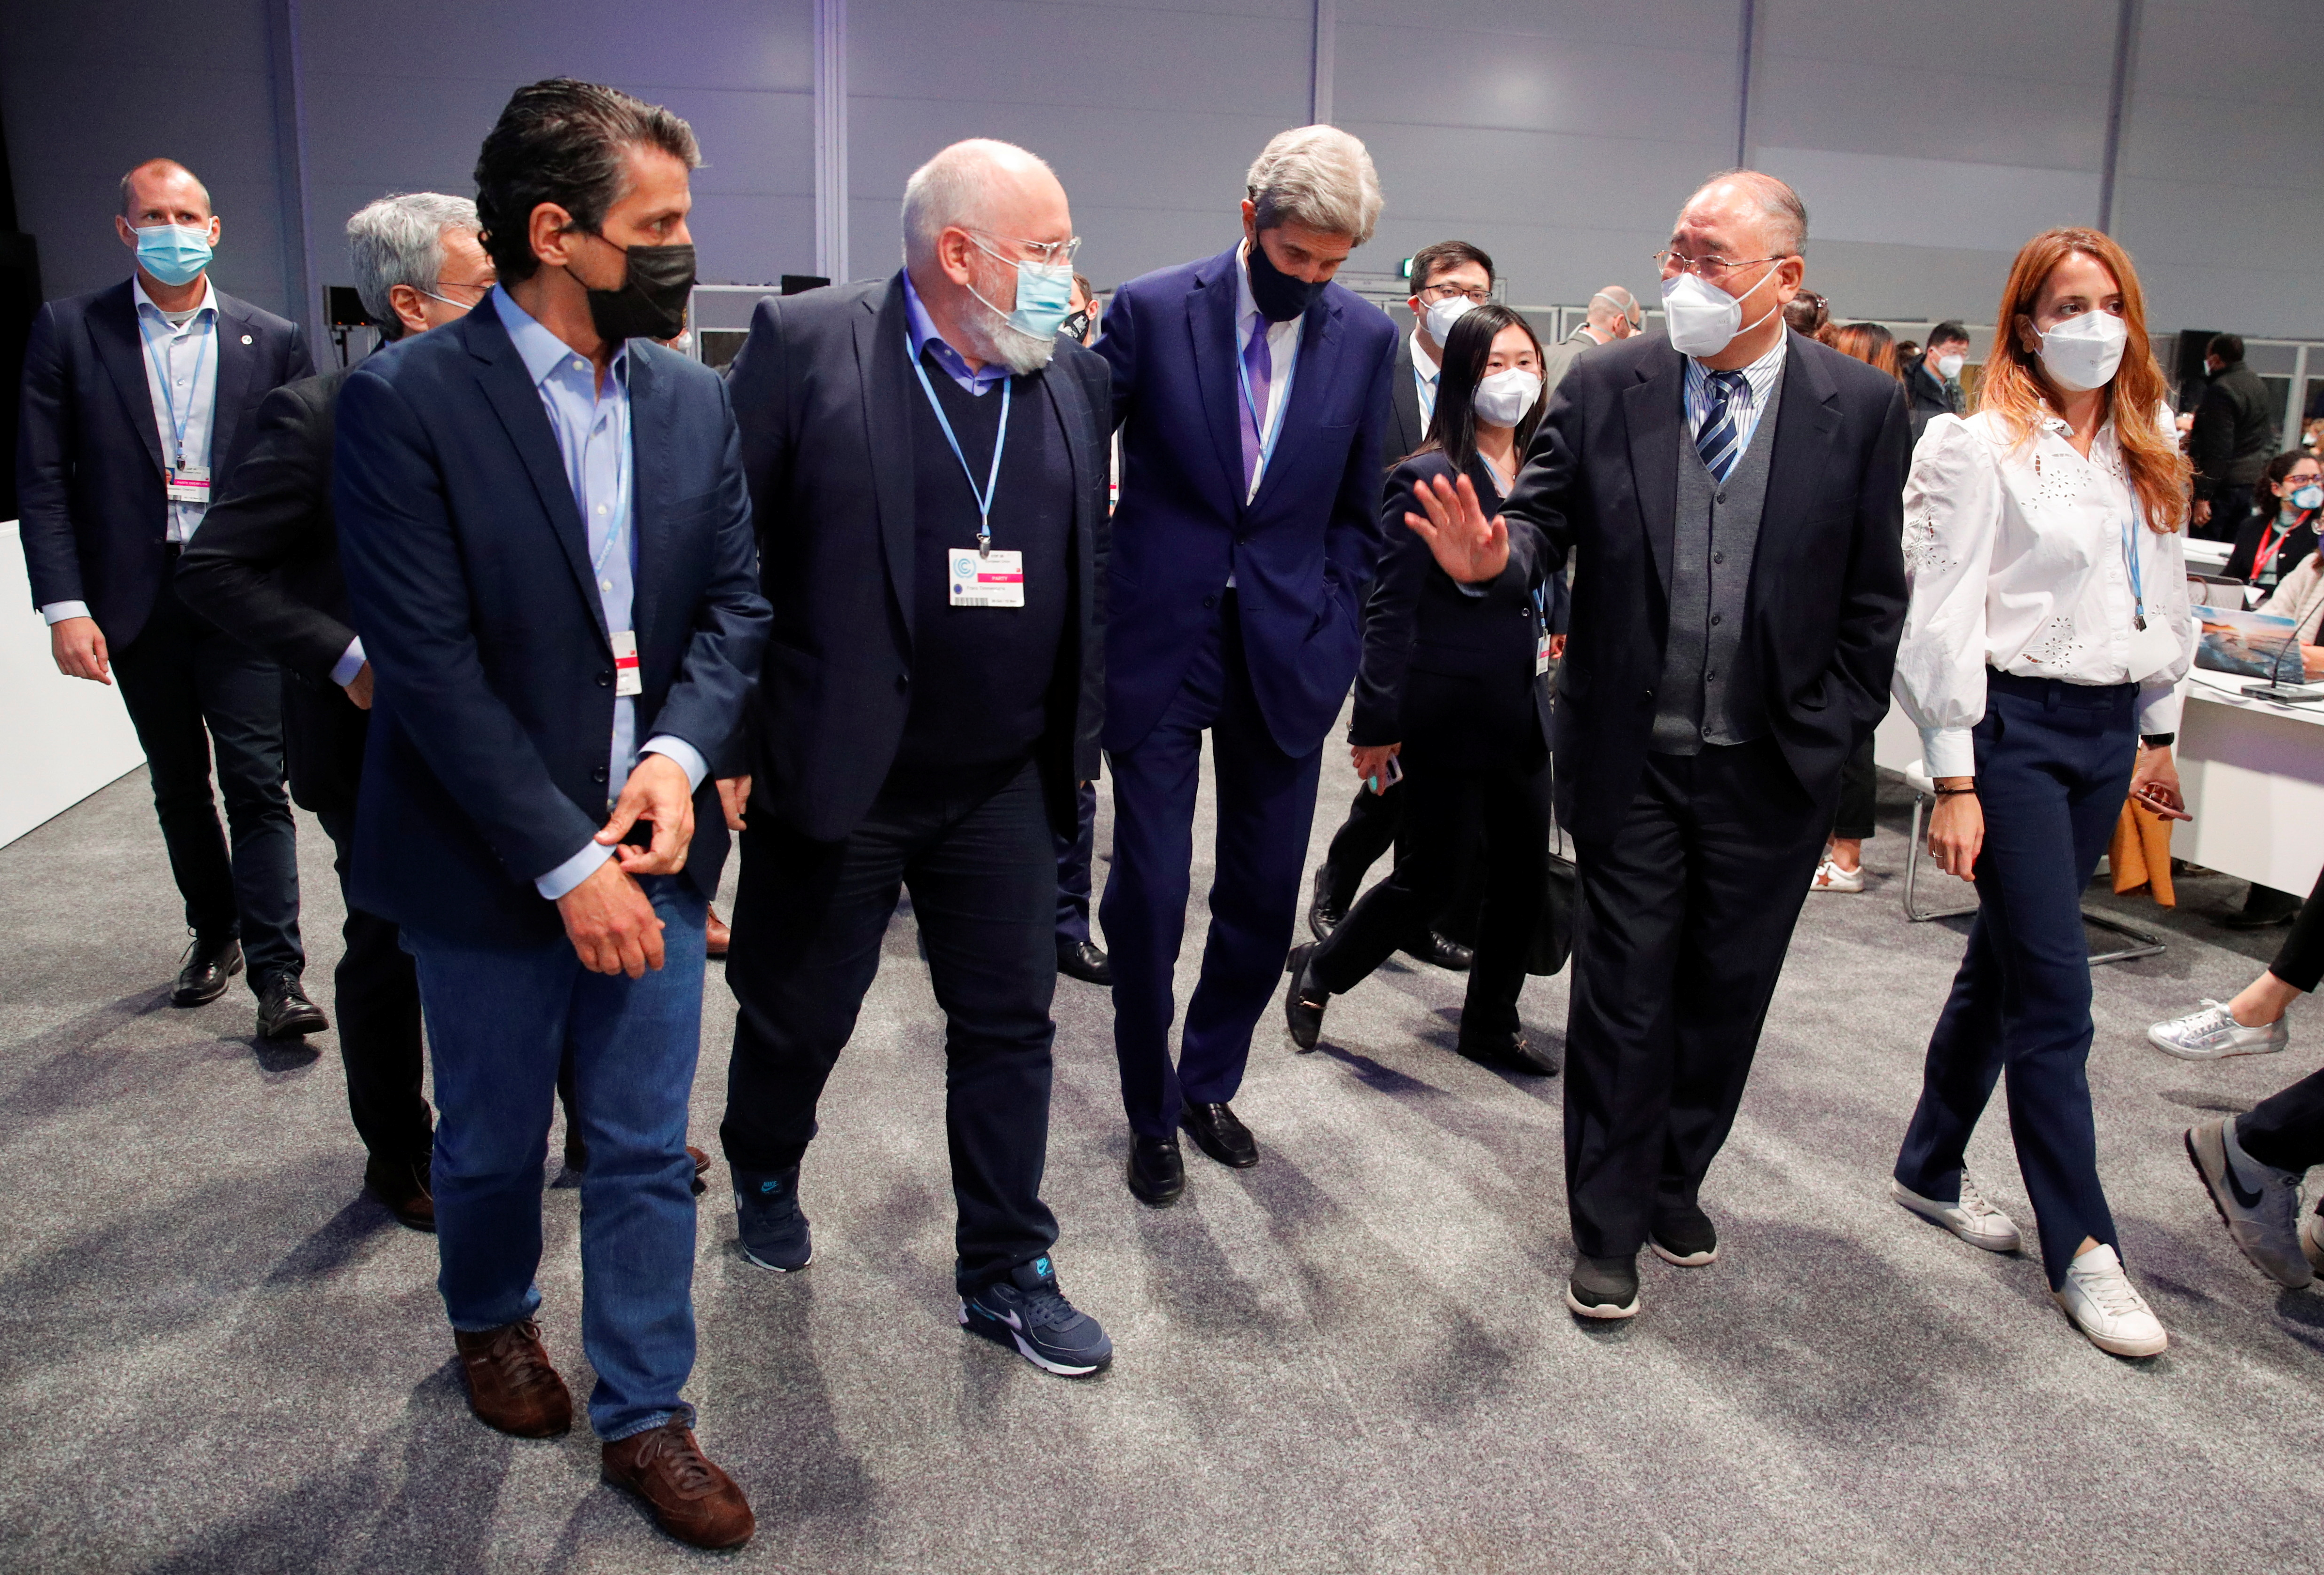 El vicepresidente de la Comisión Europea, Frans Timmermans, el enviado de Estados Unidos para el clima, John Kerry, y el negociador jefe de China para el clima, Xie Zhenhua, caminan durante la Conferencia de las Naciones Unidas sobre el Cambio Climático (COP26) en Glasgow, Escocia, Gran Bretaña, el 13 de noviembre de 2021. REUTERS/Phil Noble